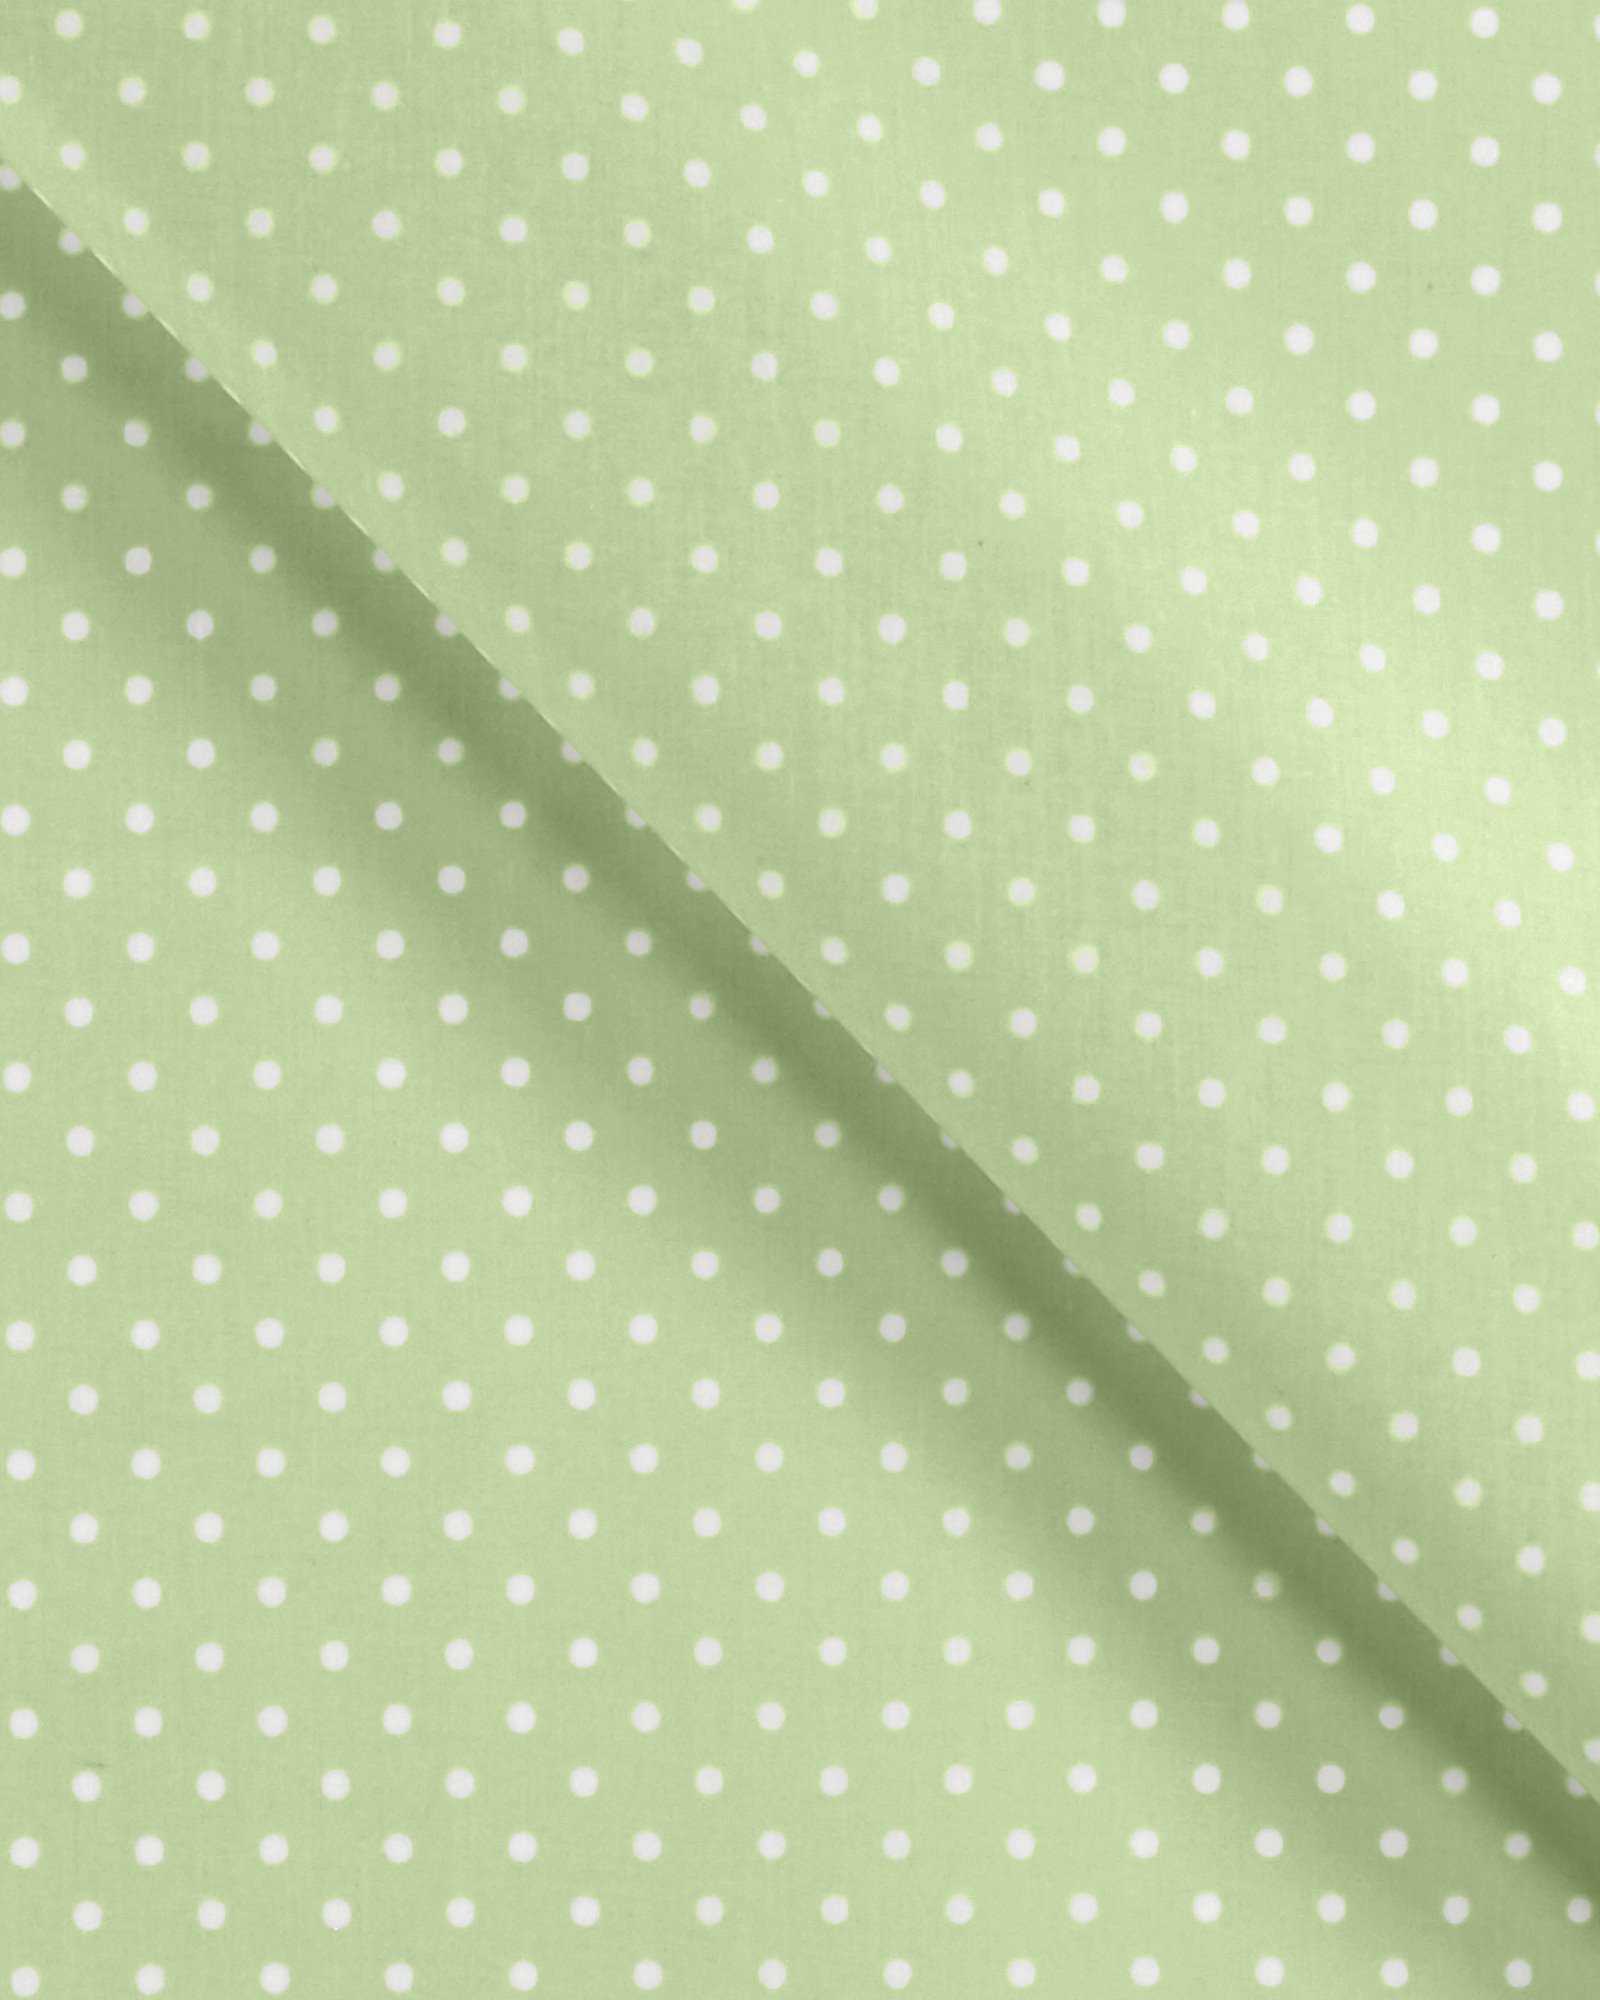 Tekstilvoksduk lys grønn m hvite prikker 861508_pack